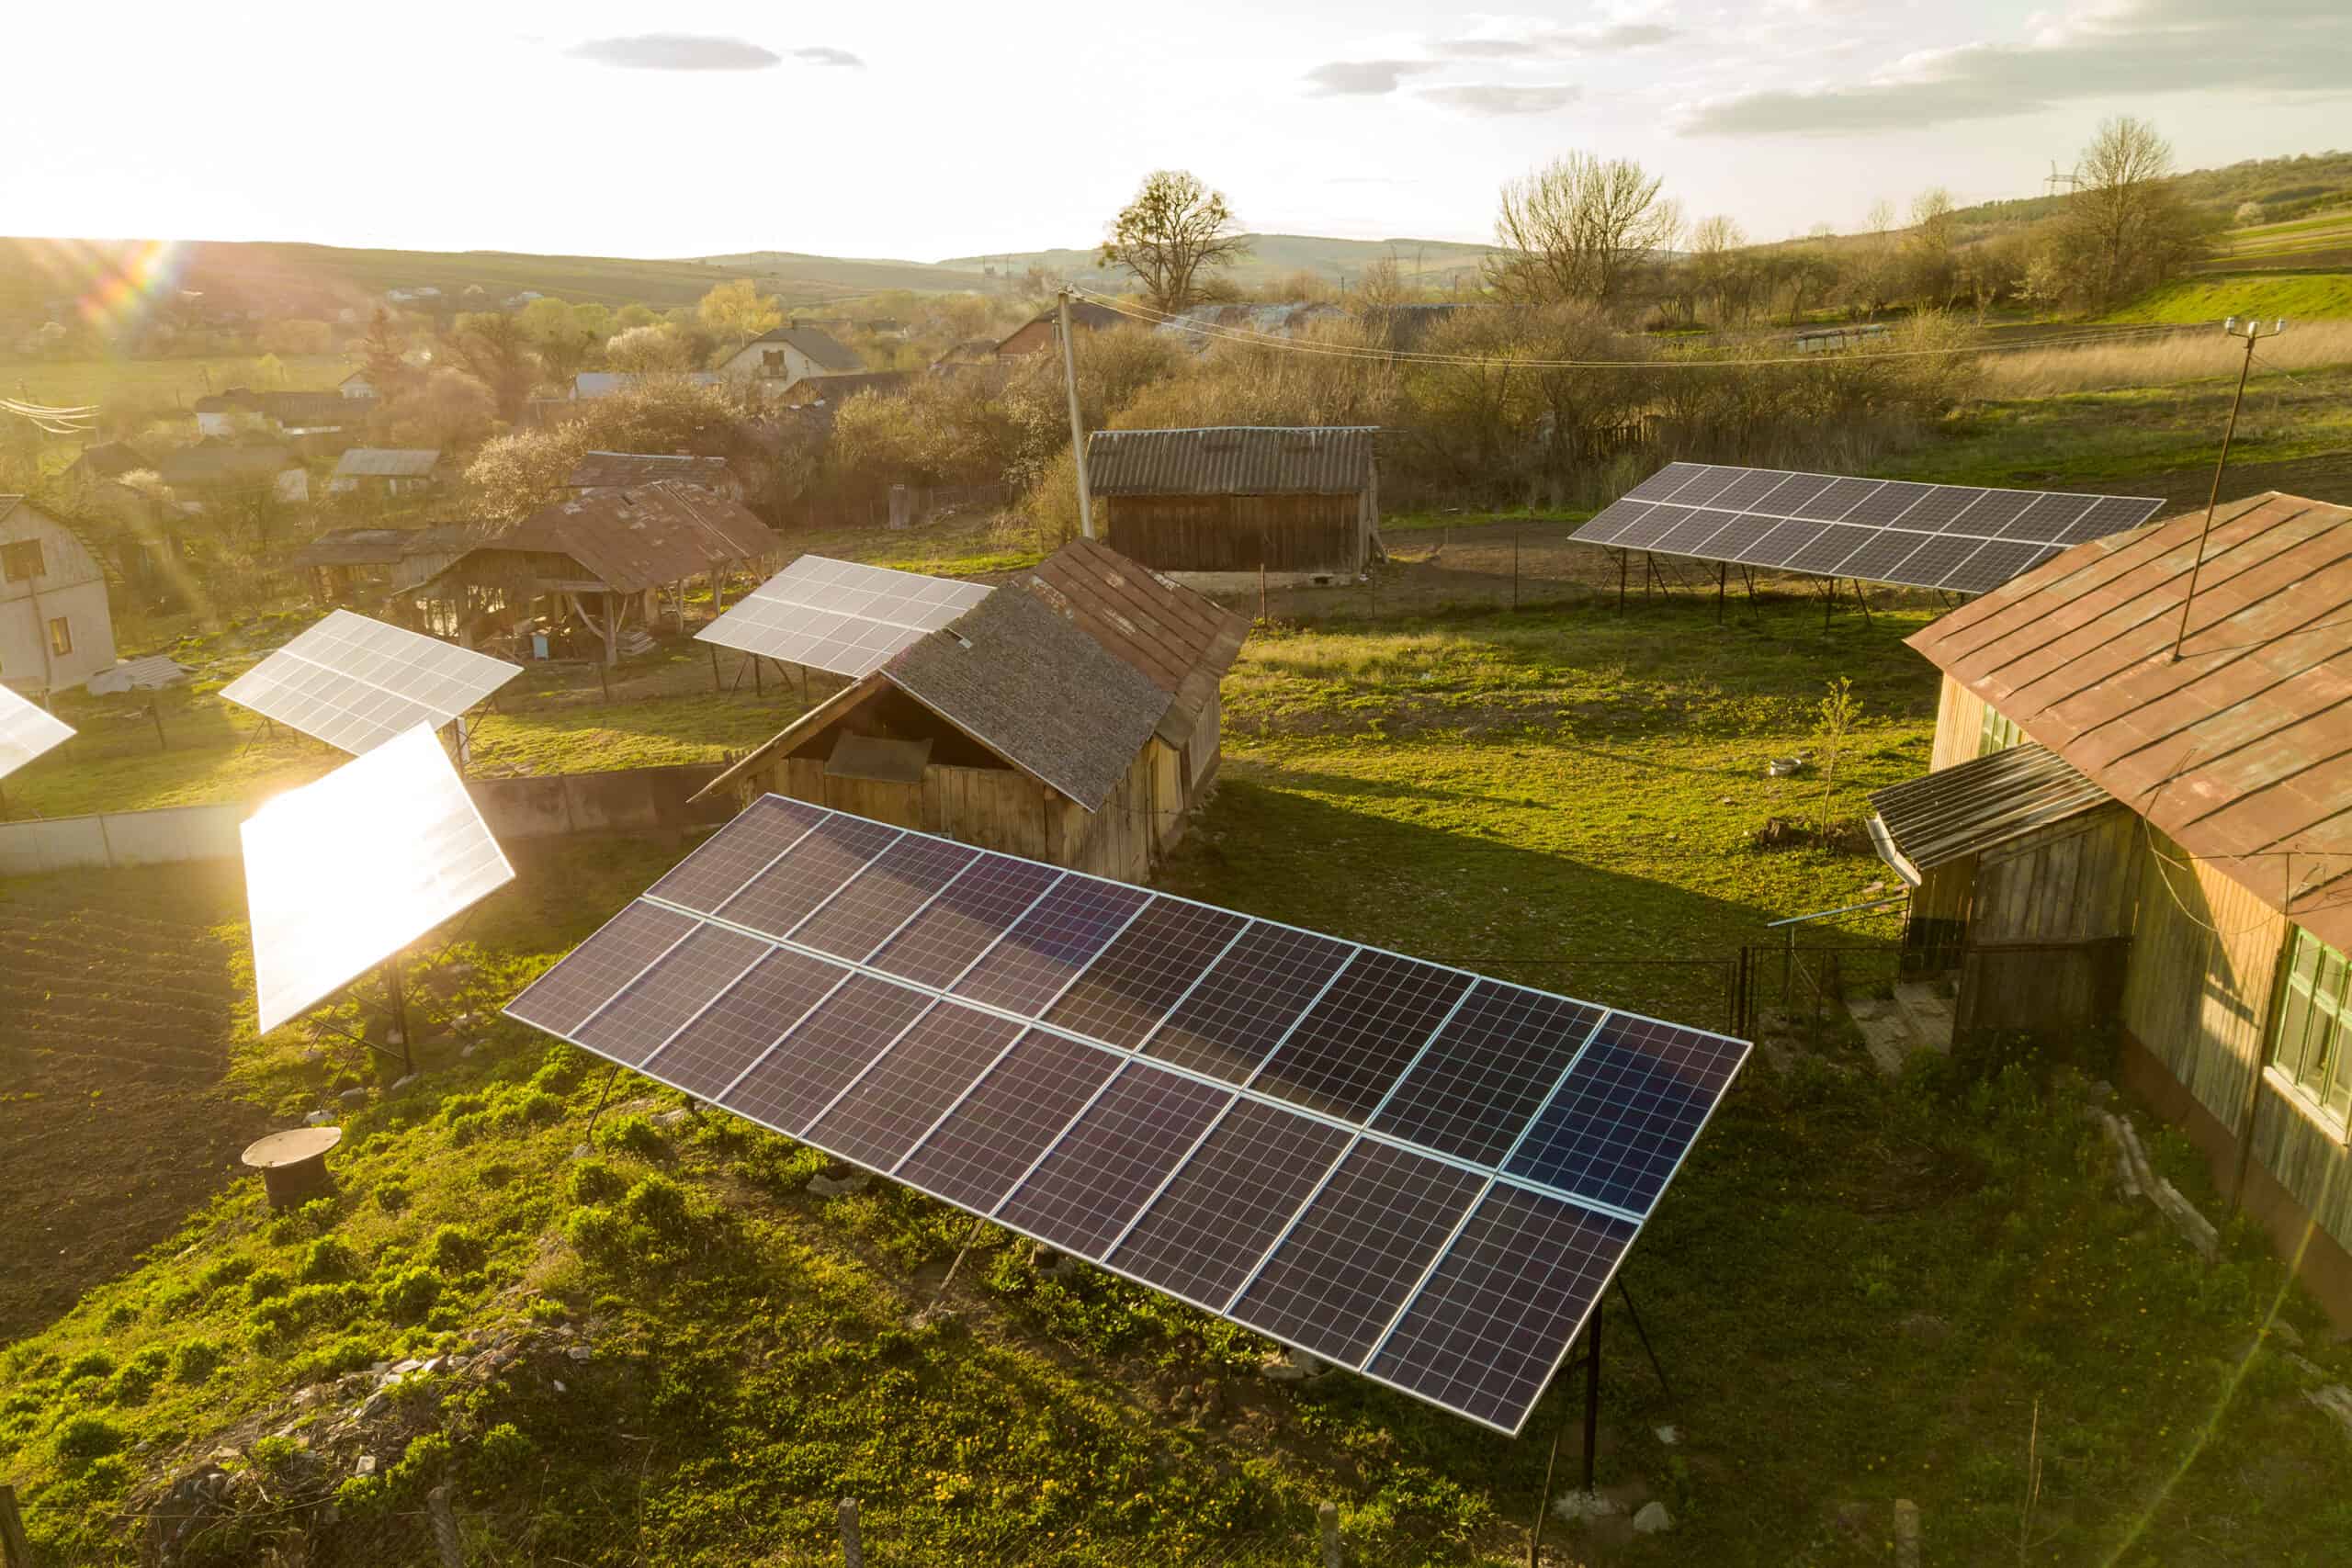 Solar Power in Rural Communities